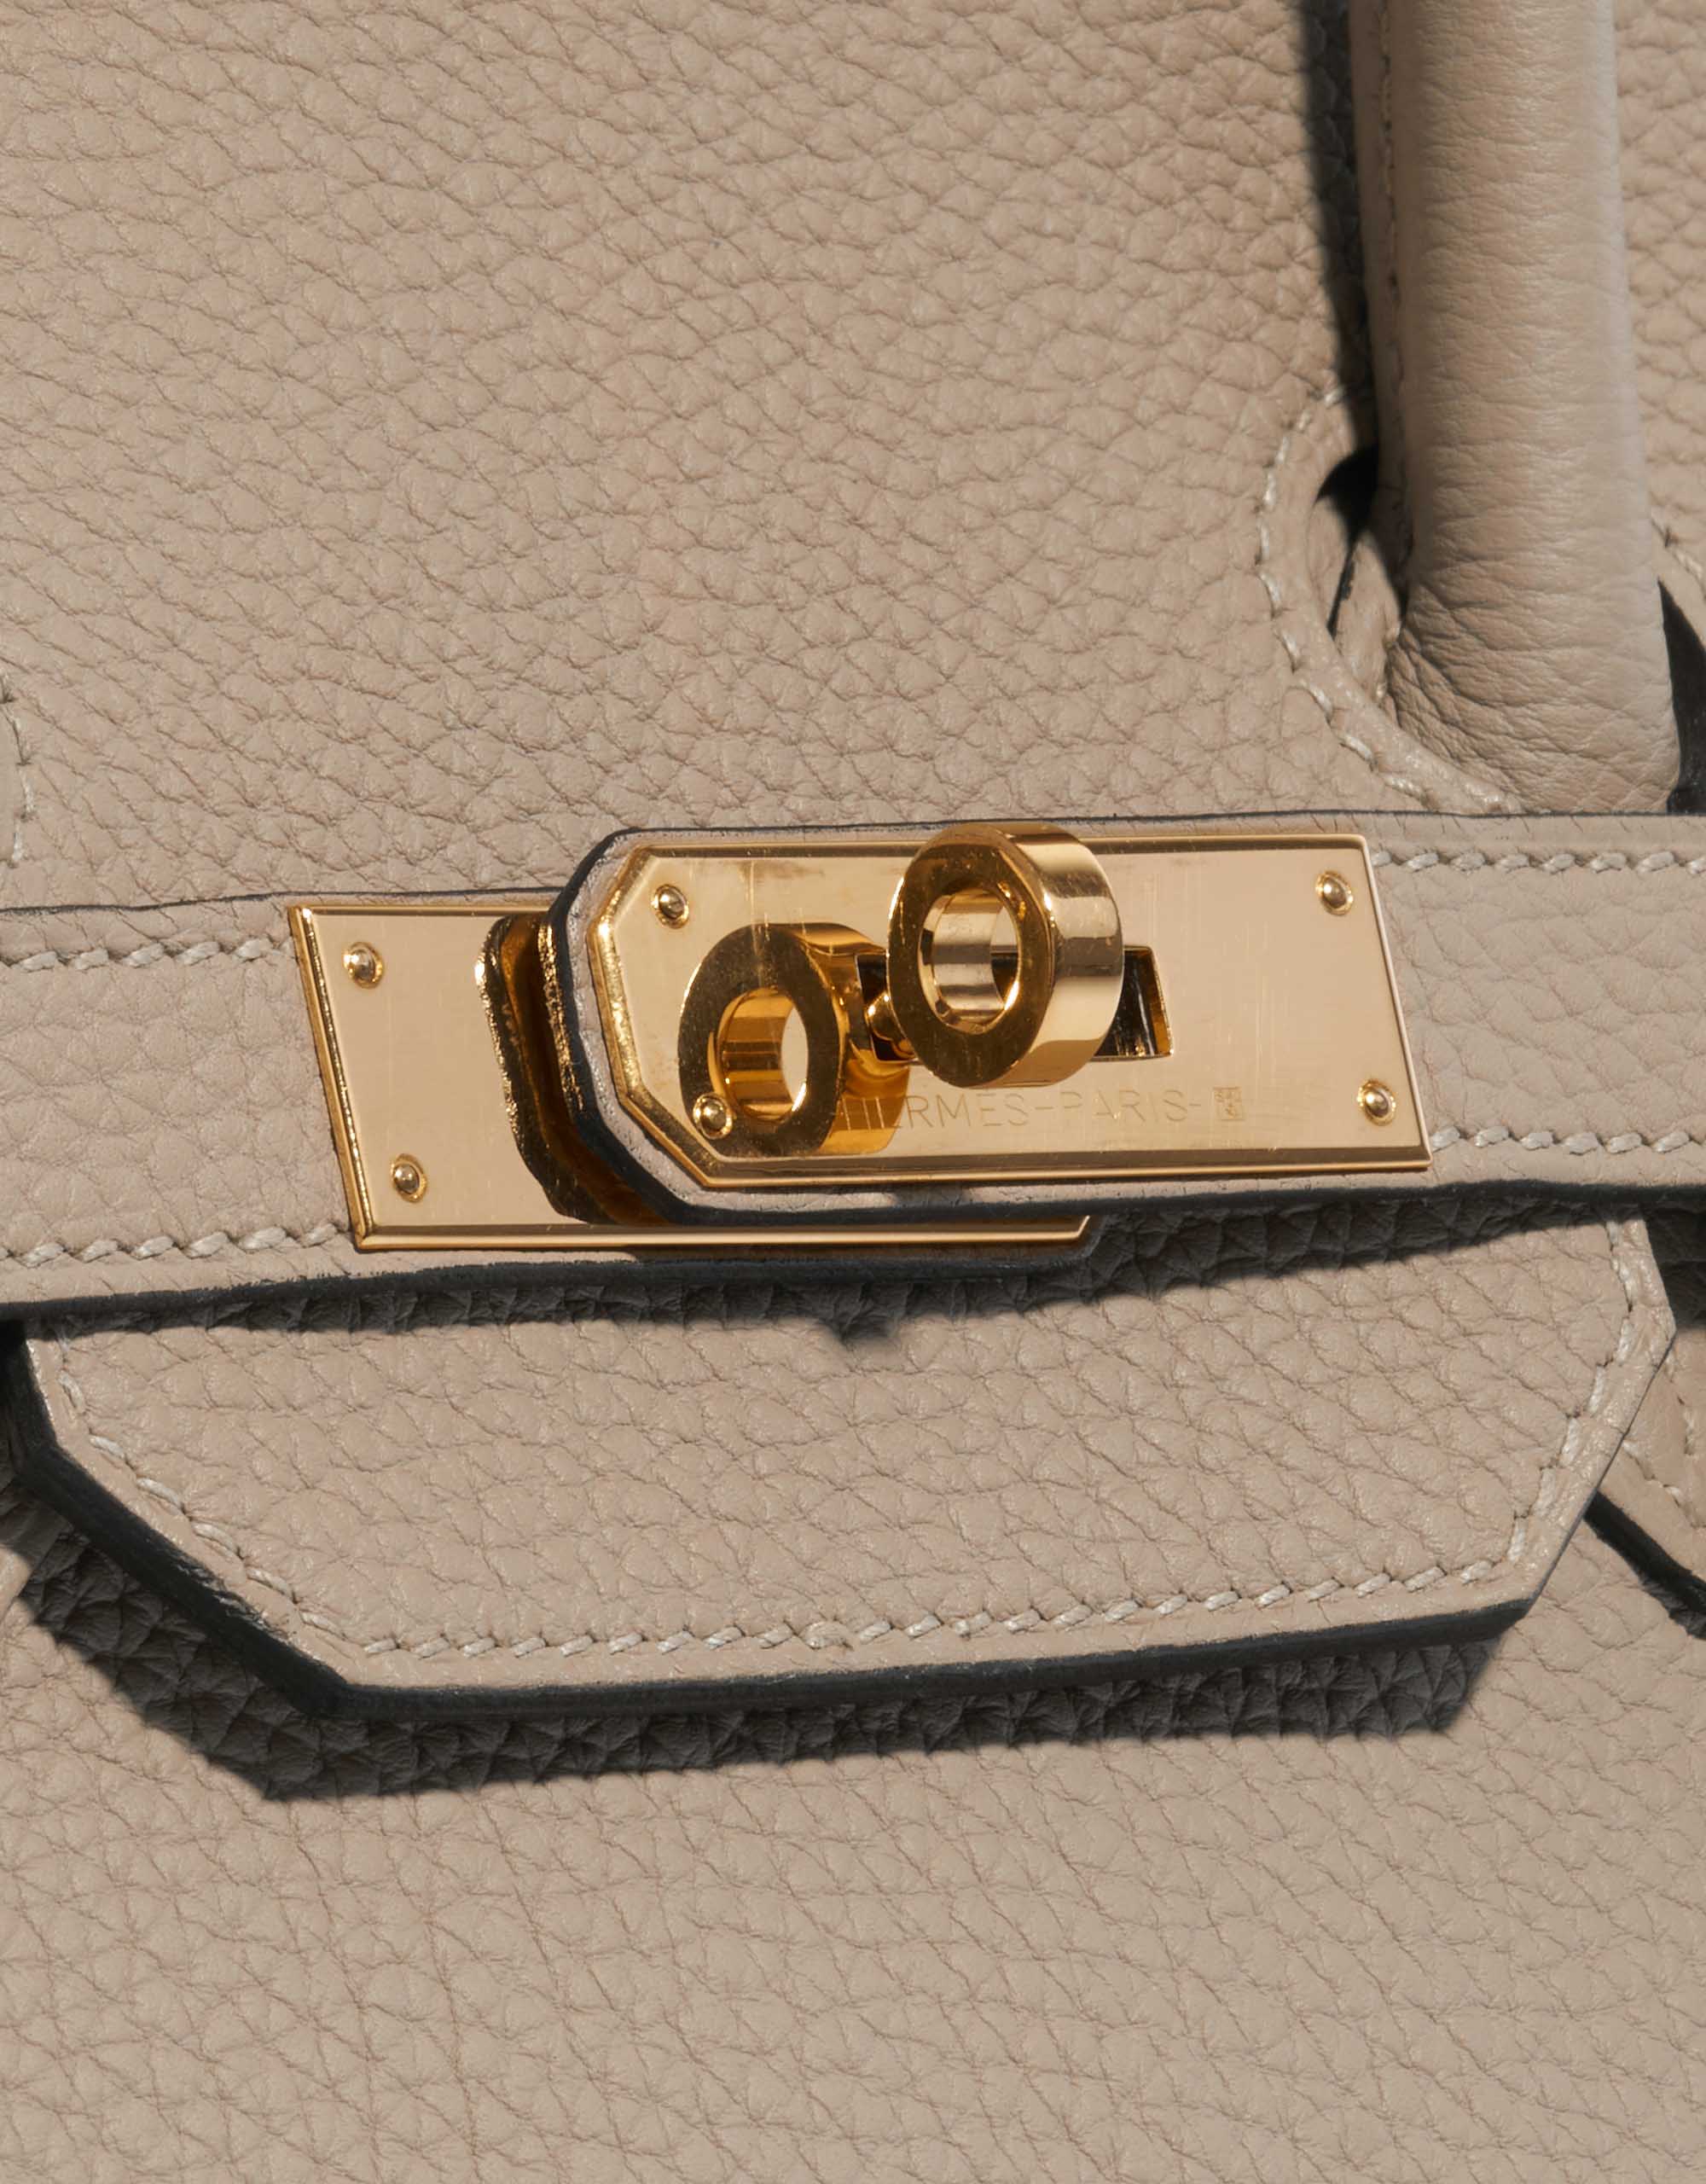 Hermes Birkin bag 35 Vert gris Togo leather Gold hardware